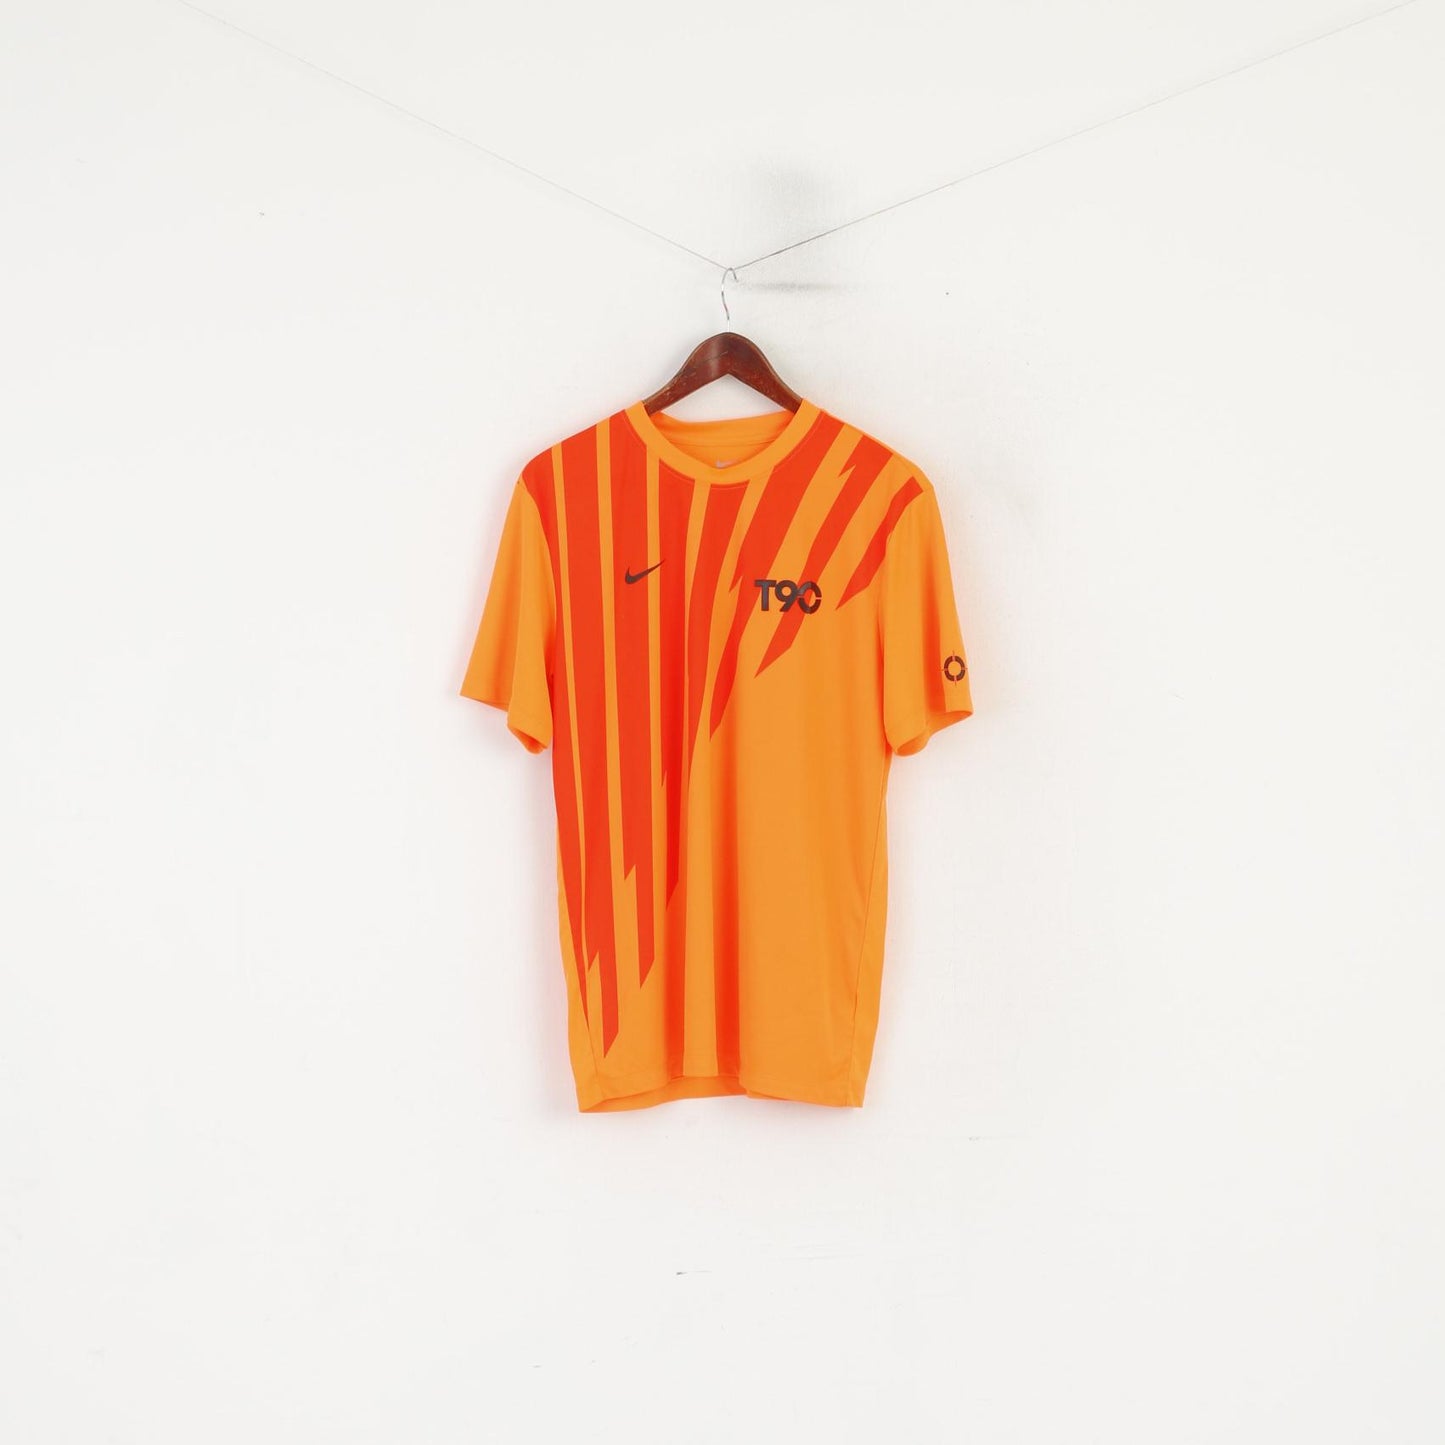 Nike Men L Shirt Neon Orange Football T90 Sportswear Jersey Top